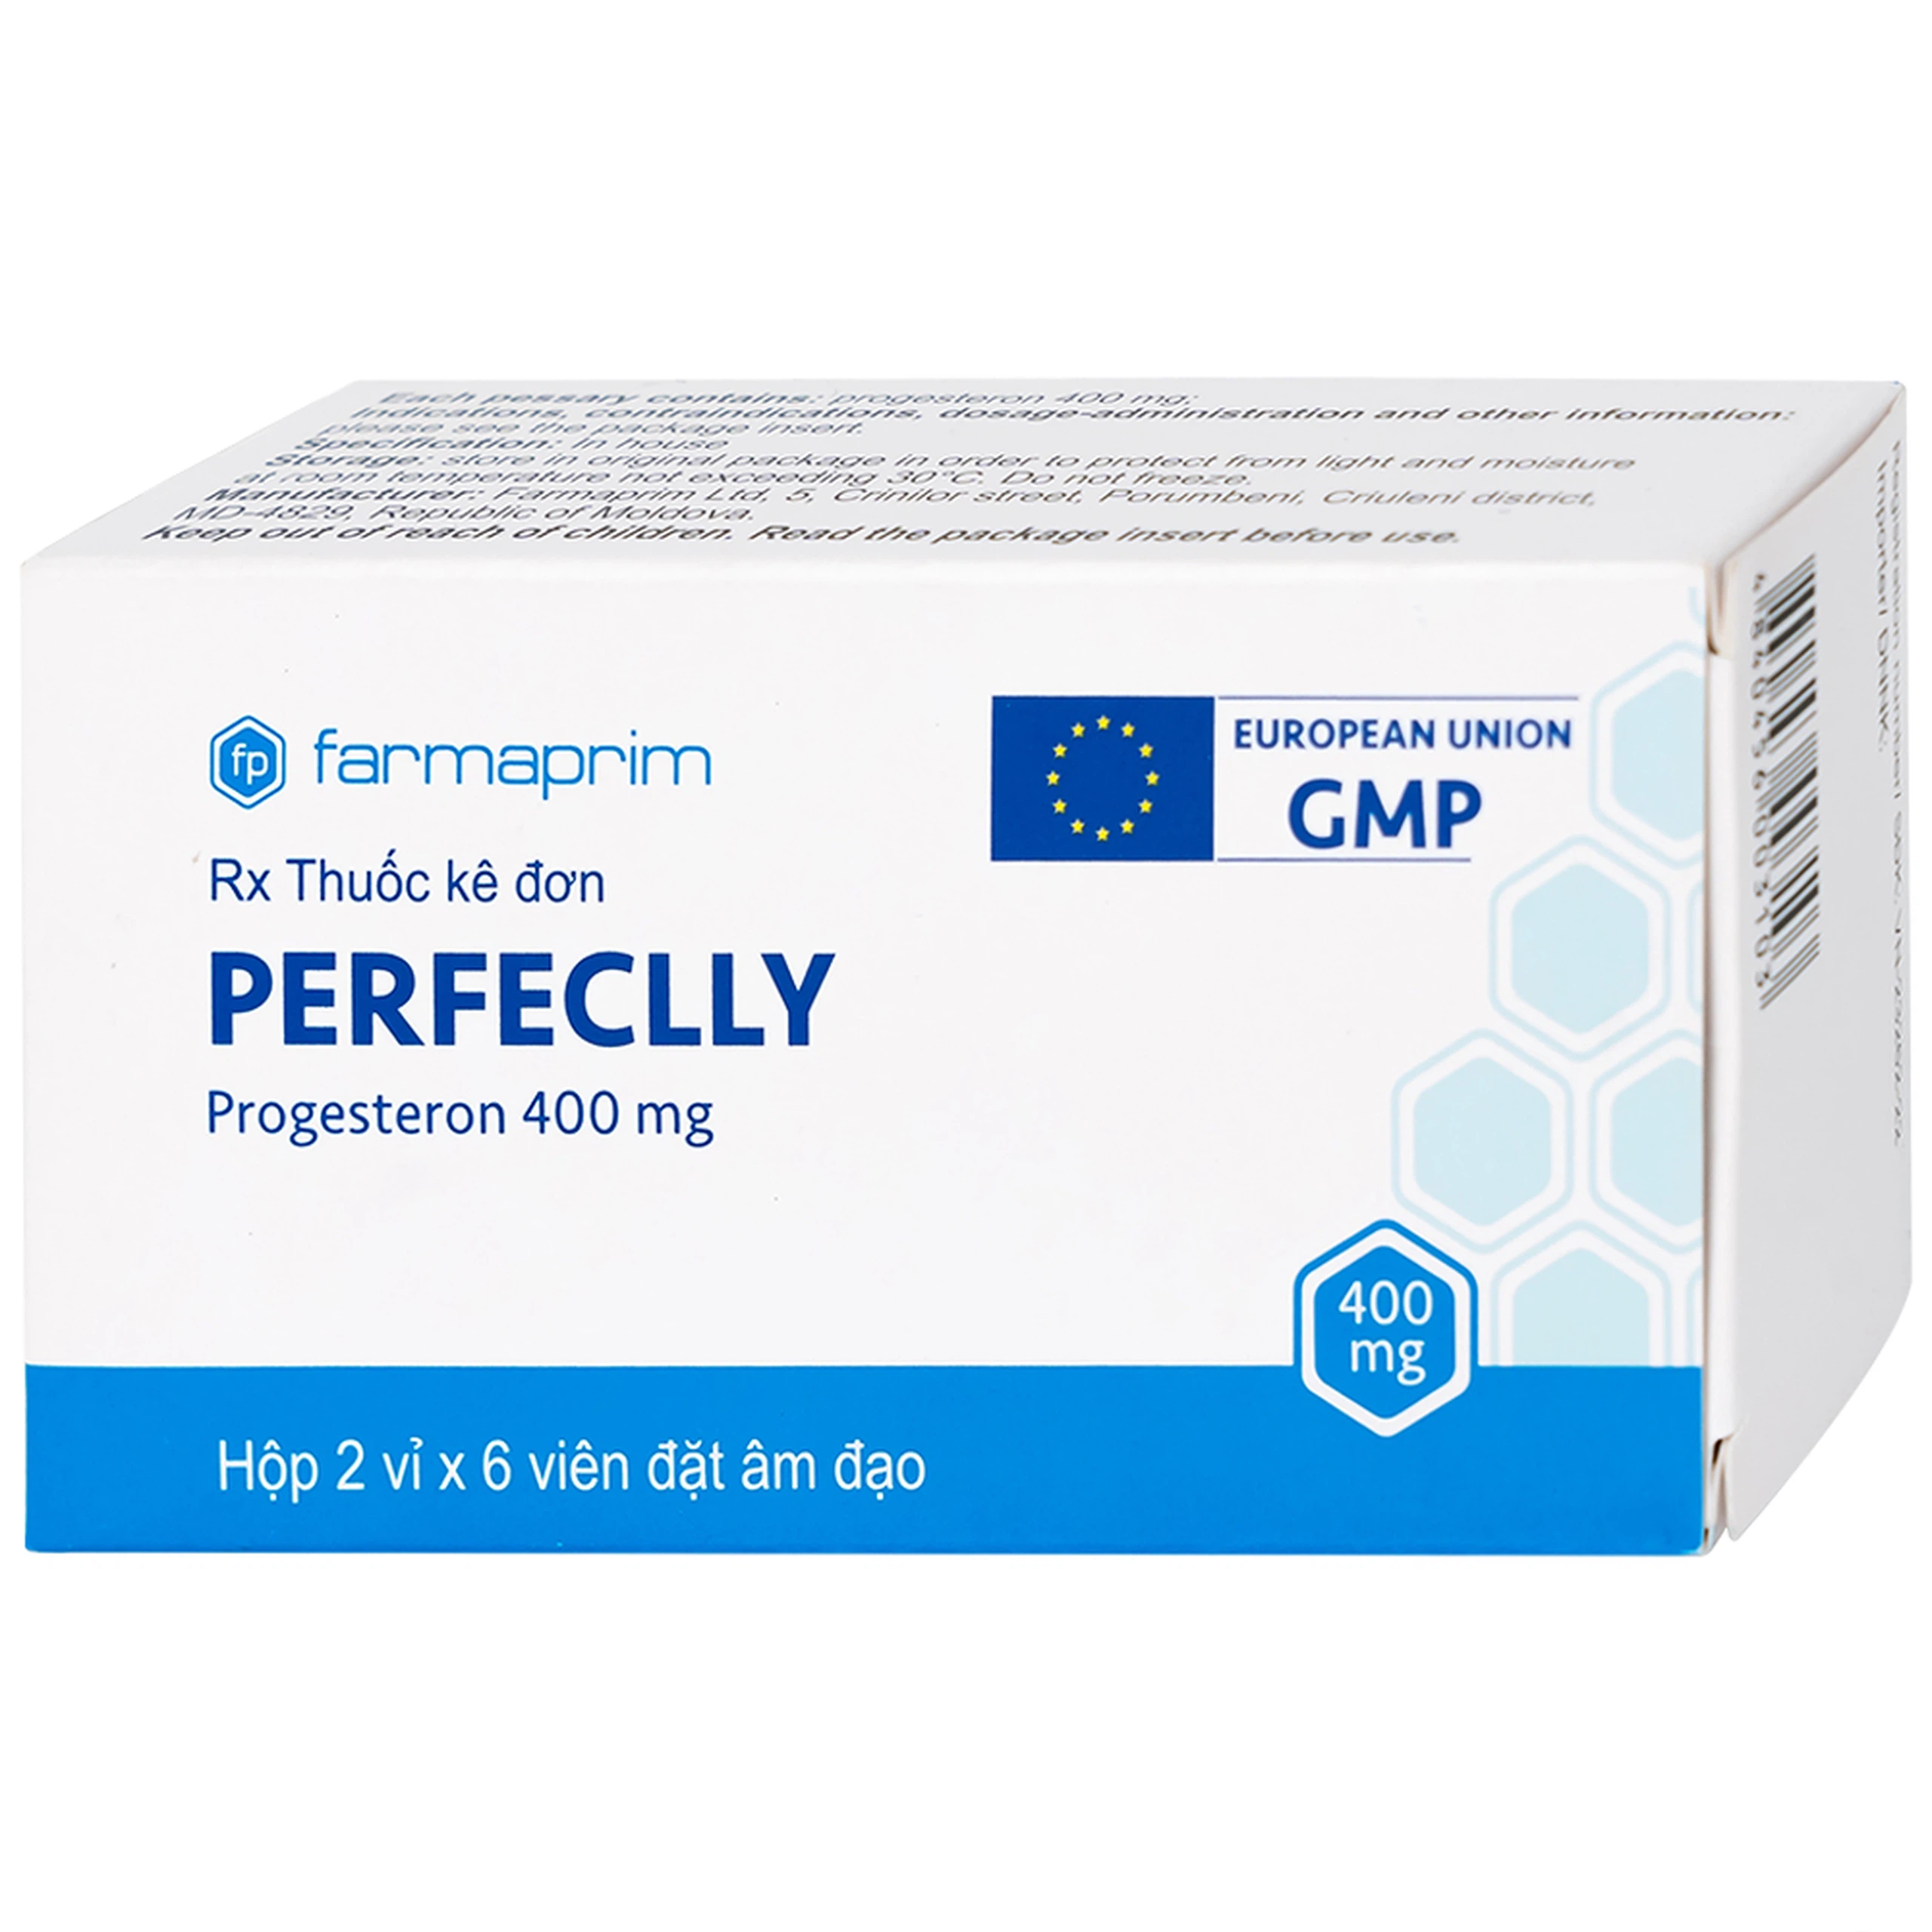 Viên đặt âm đạo Perfeclly 400mg Farmaprim điều trị hội chứng tiền kinh nguyệt (2 vỉ x 6 viên)